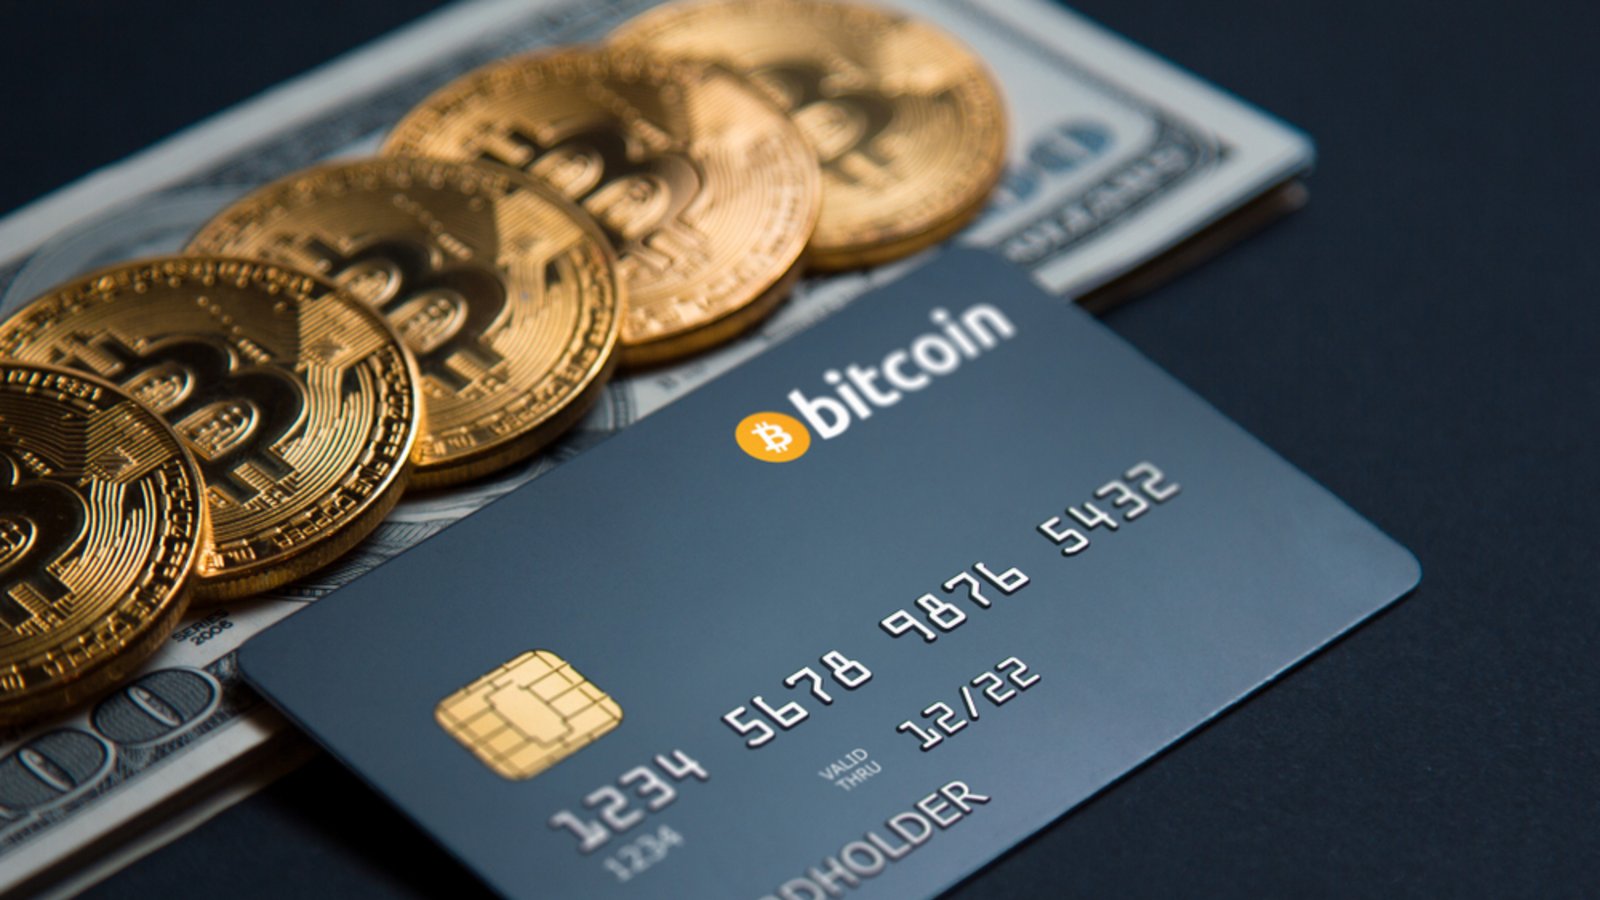 Vorsicht bei der Bezahlung mit Bitcoins.Foto: SPF / shutterstock.com